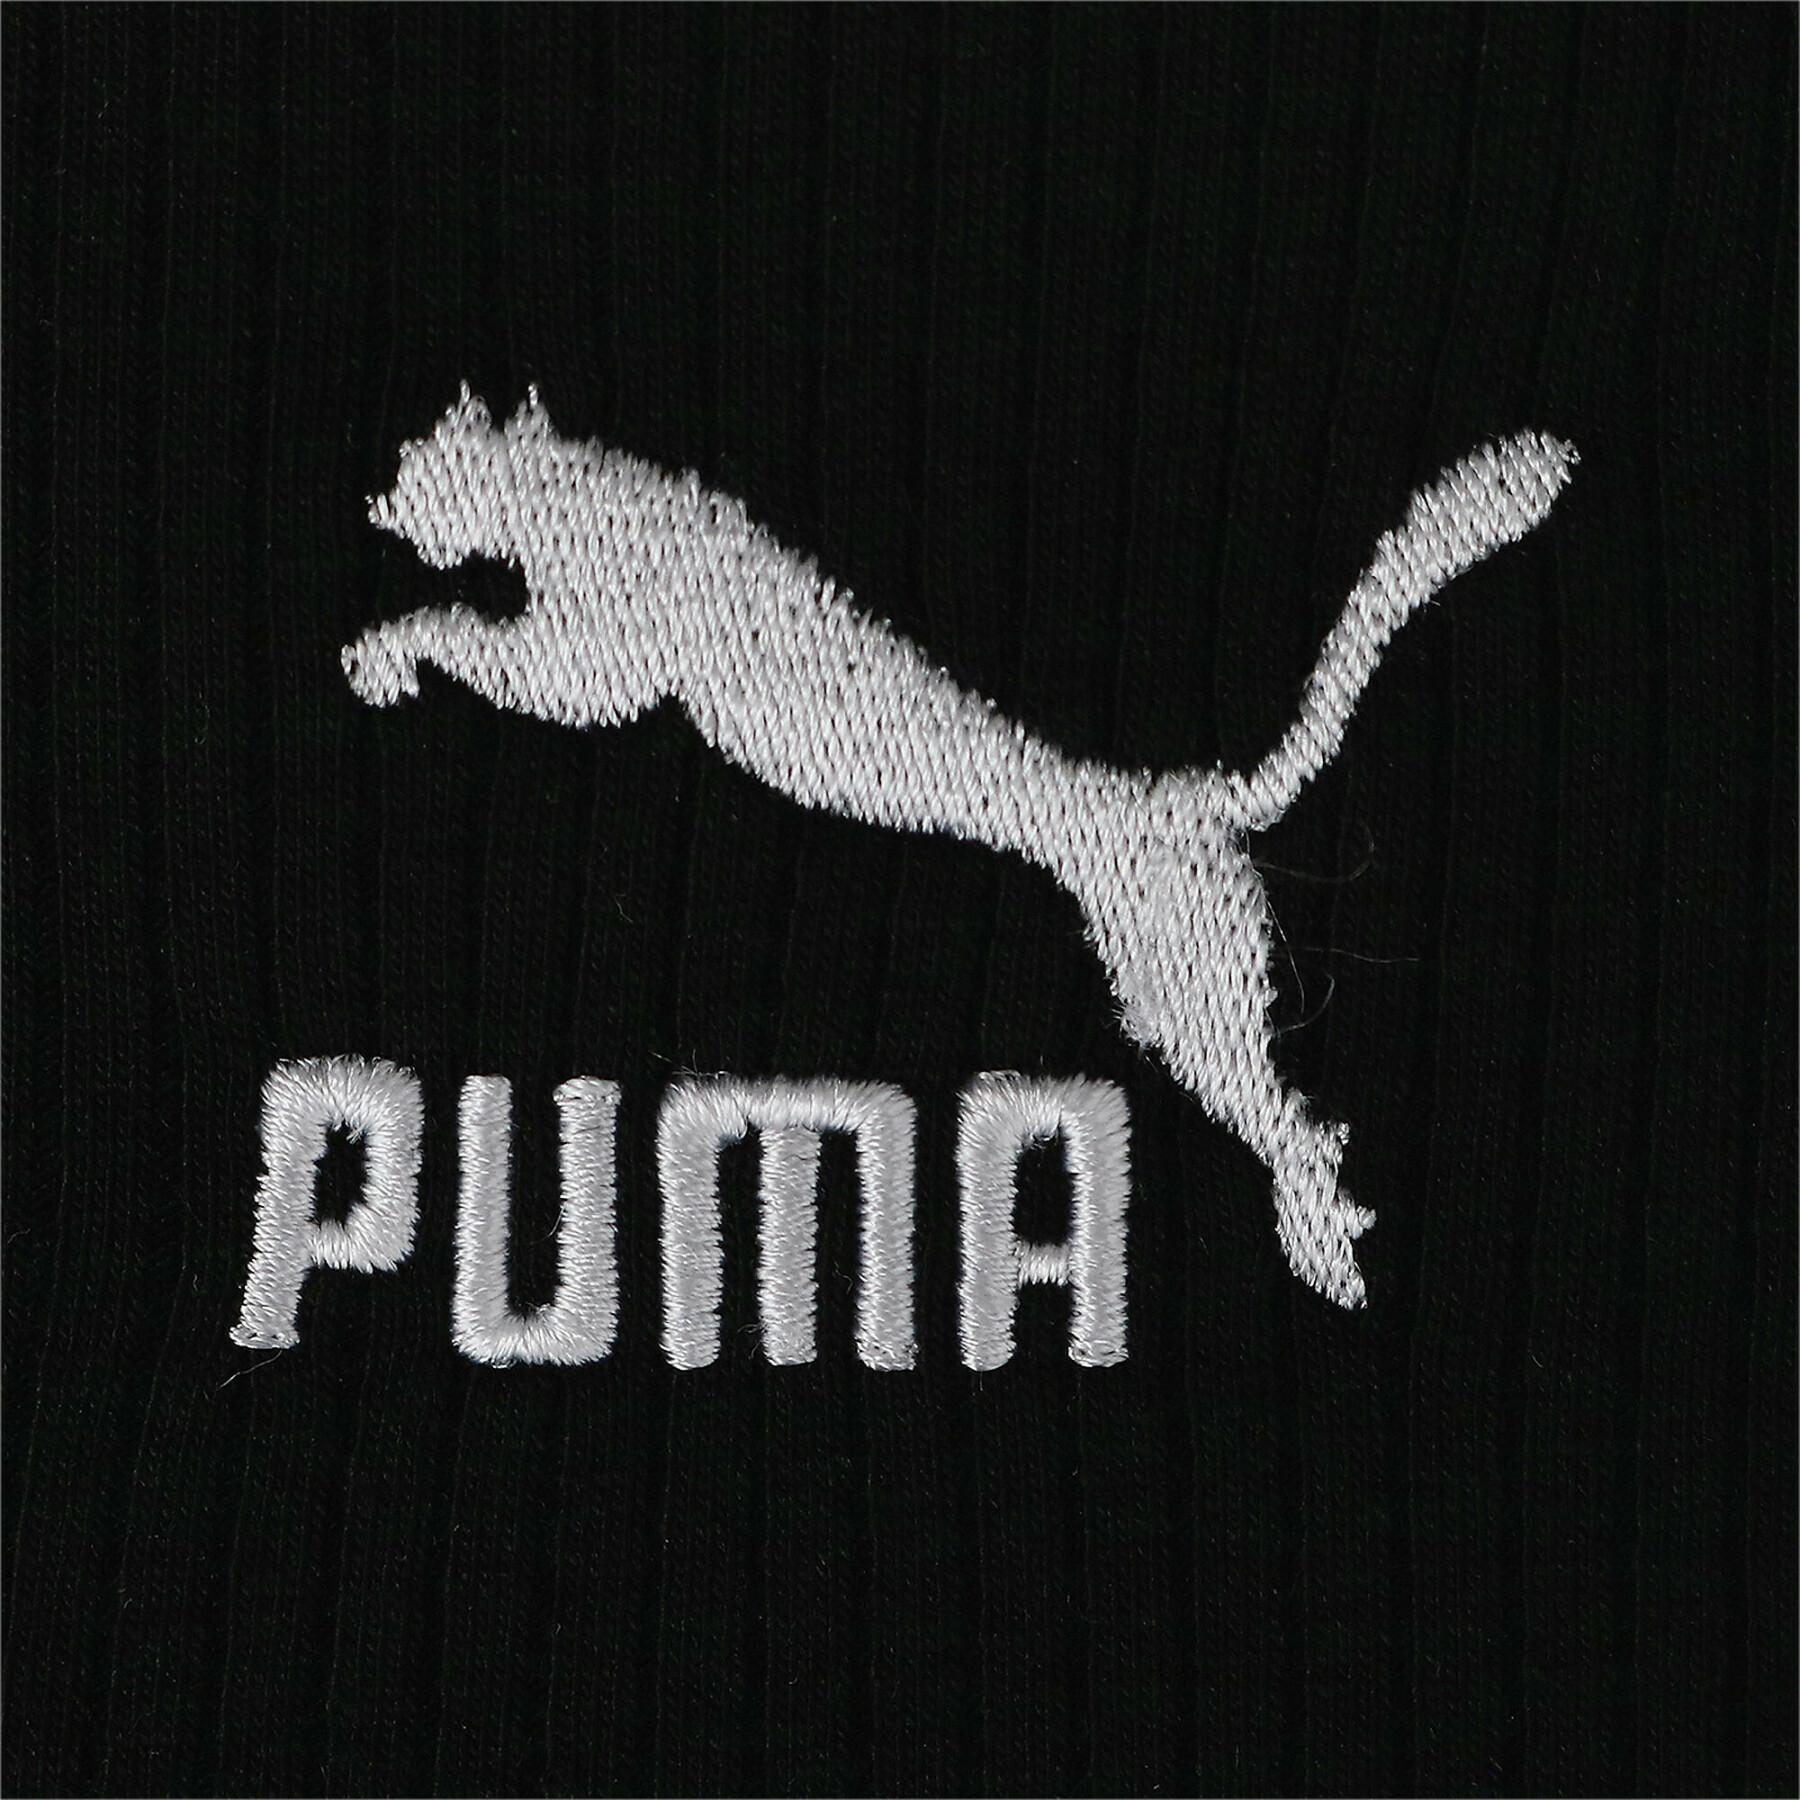 Women's t-shirt dress Puma